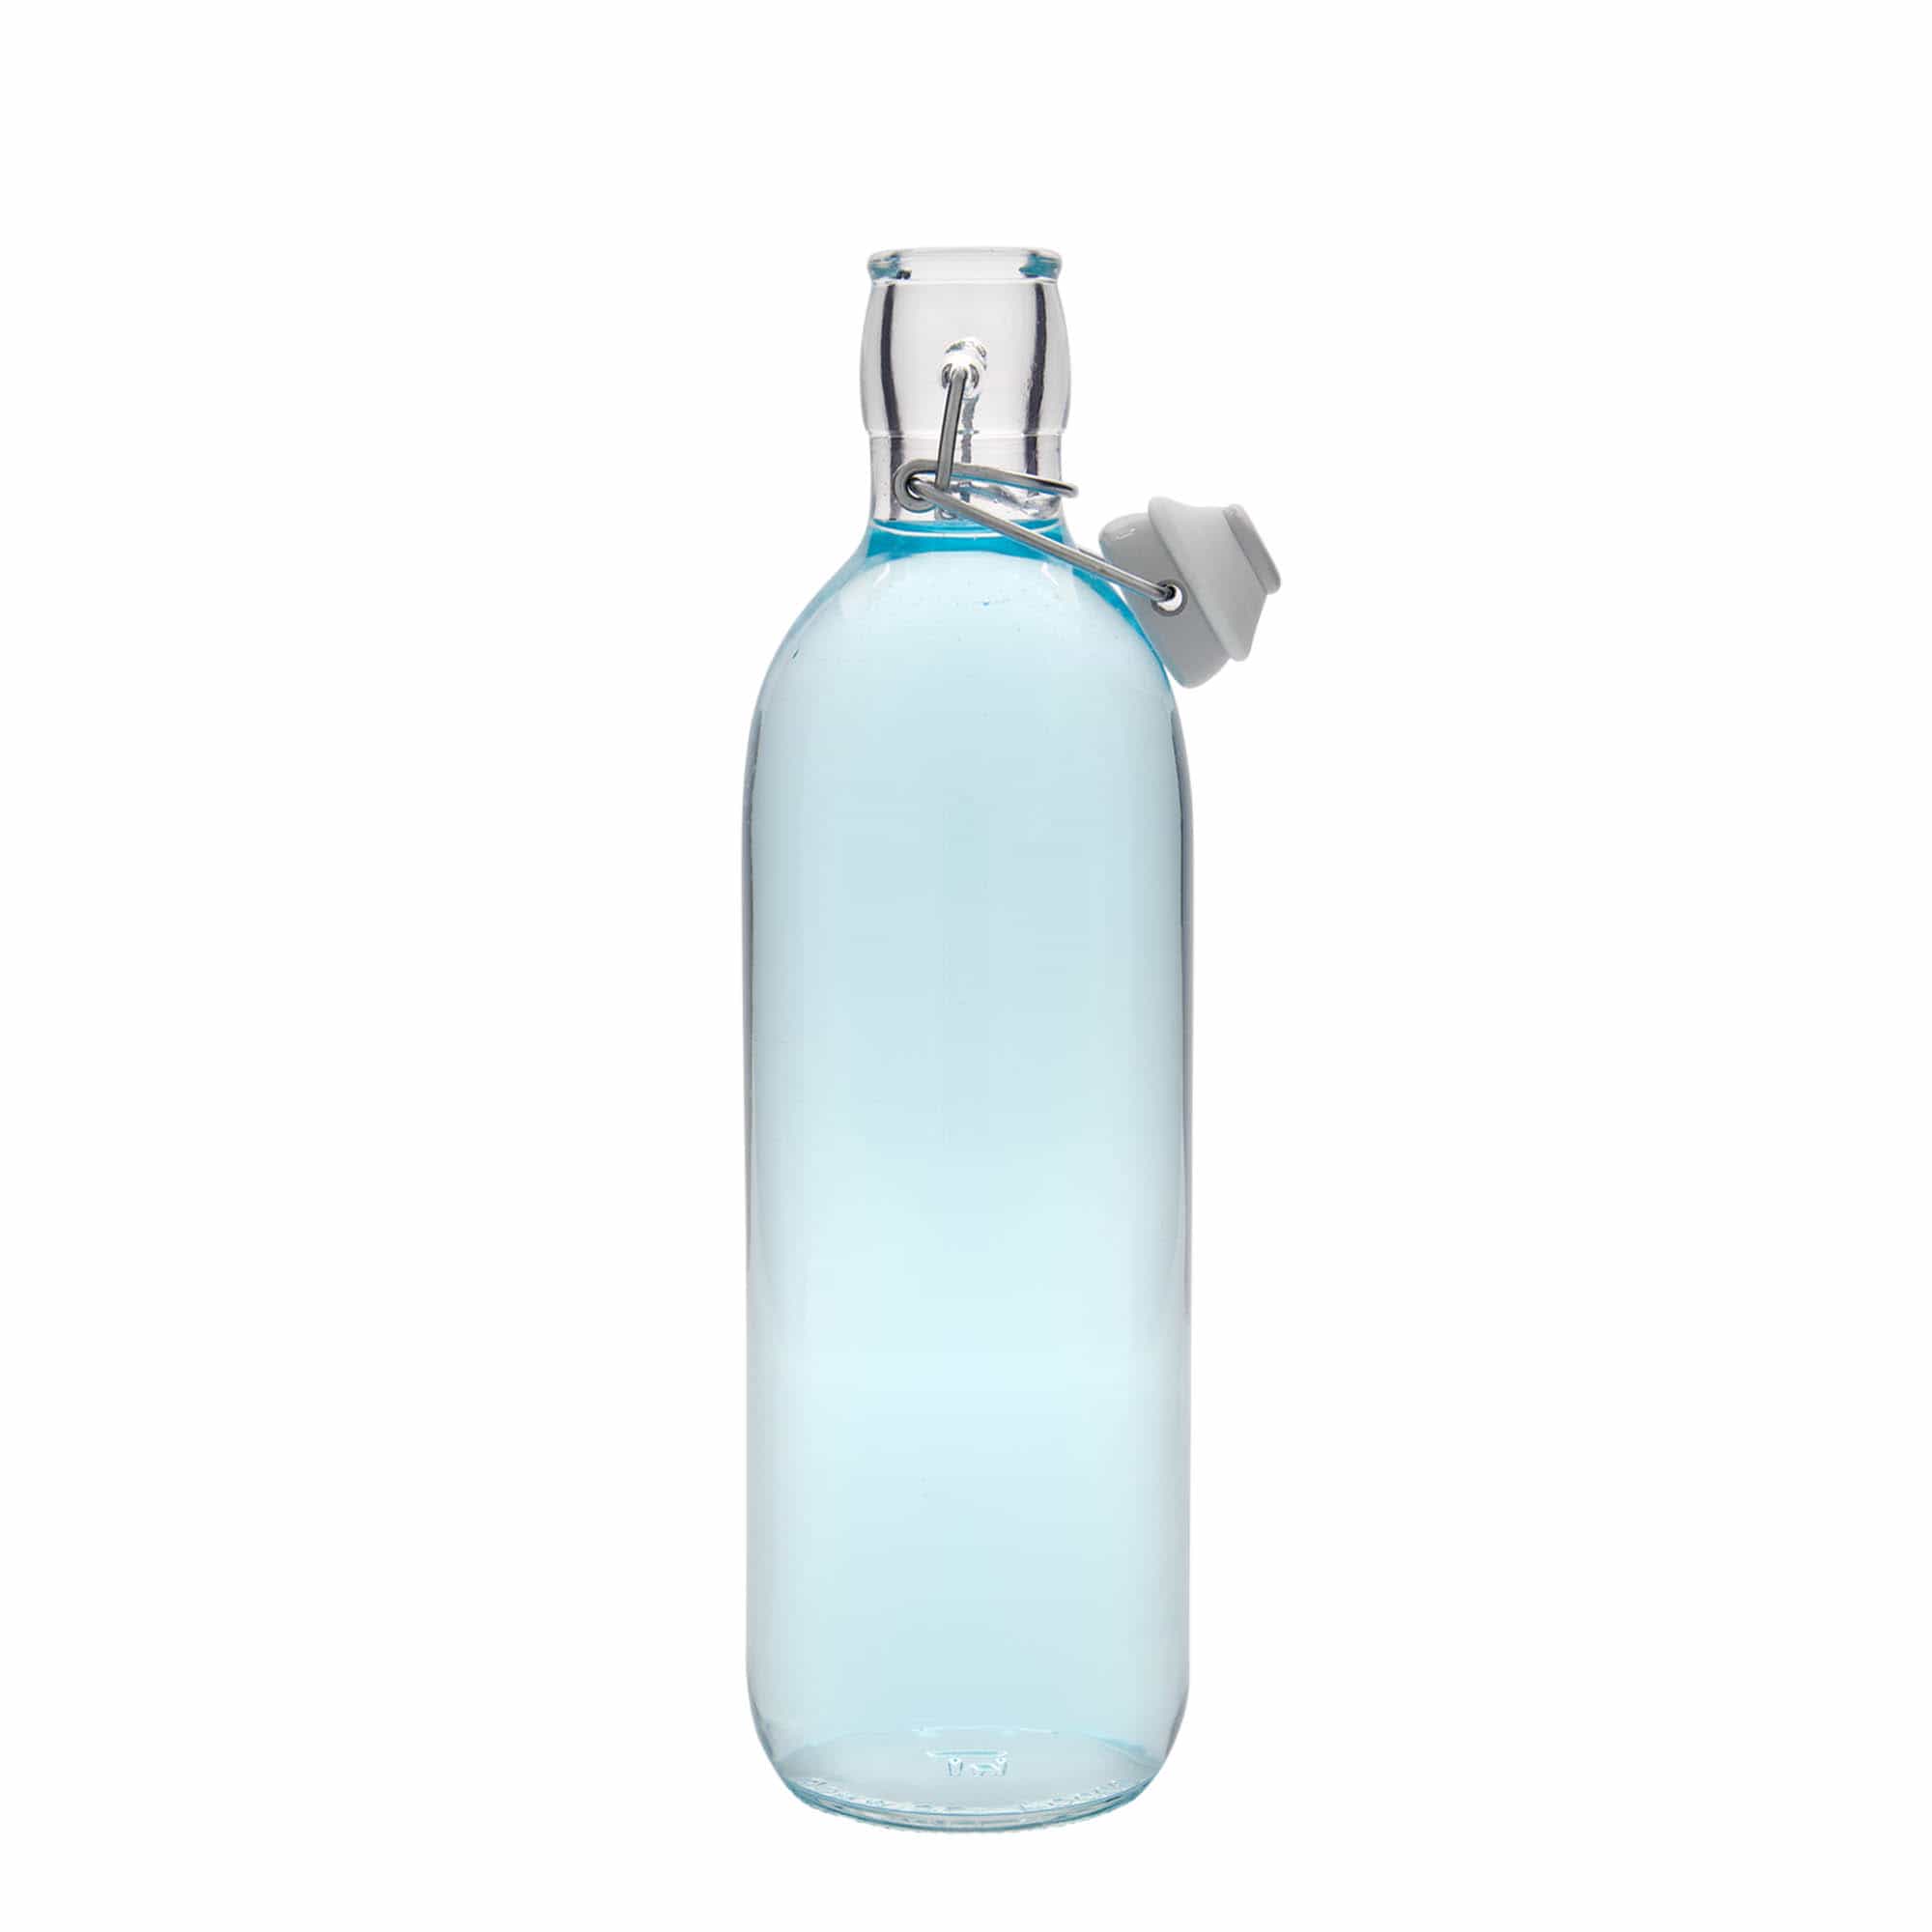 1000 ml-es üvegpalack 'Emilia', szájnyílás: csatos zár